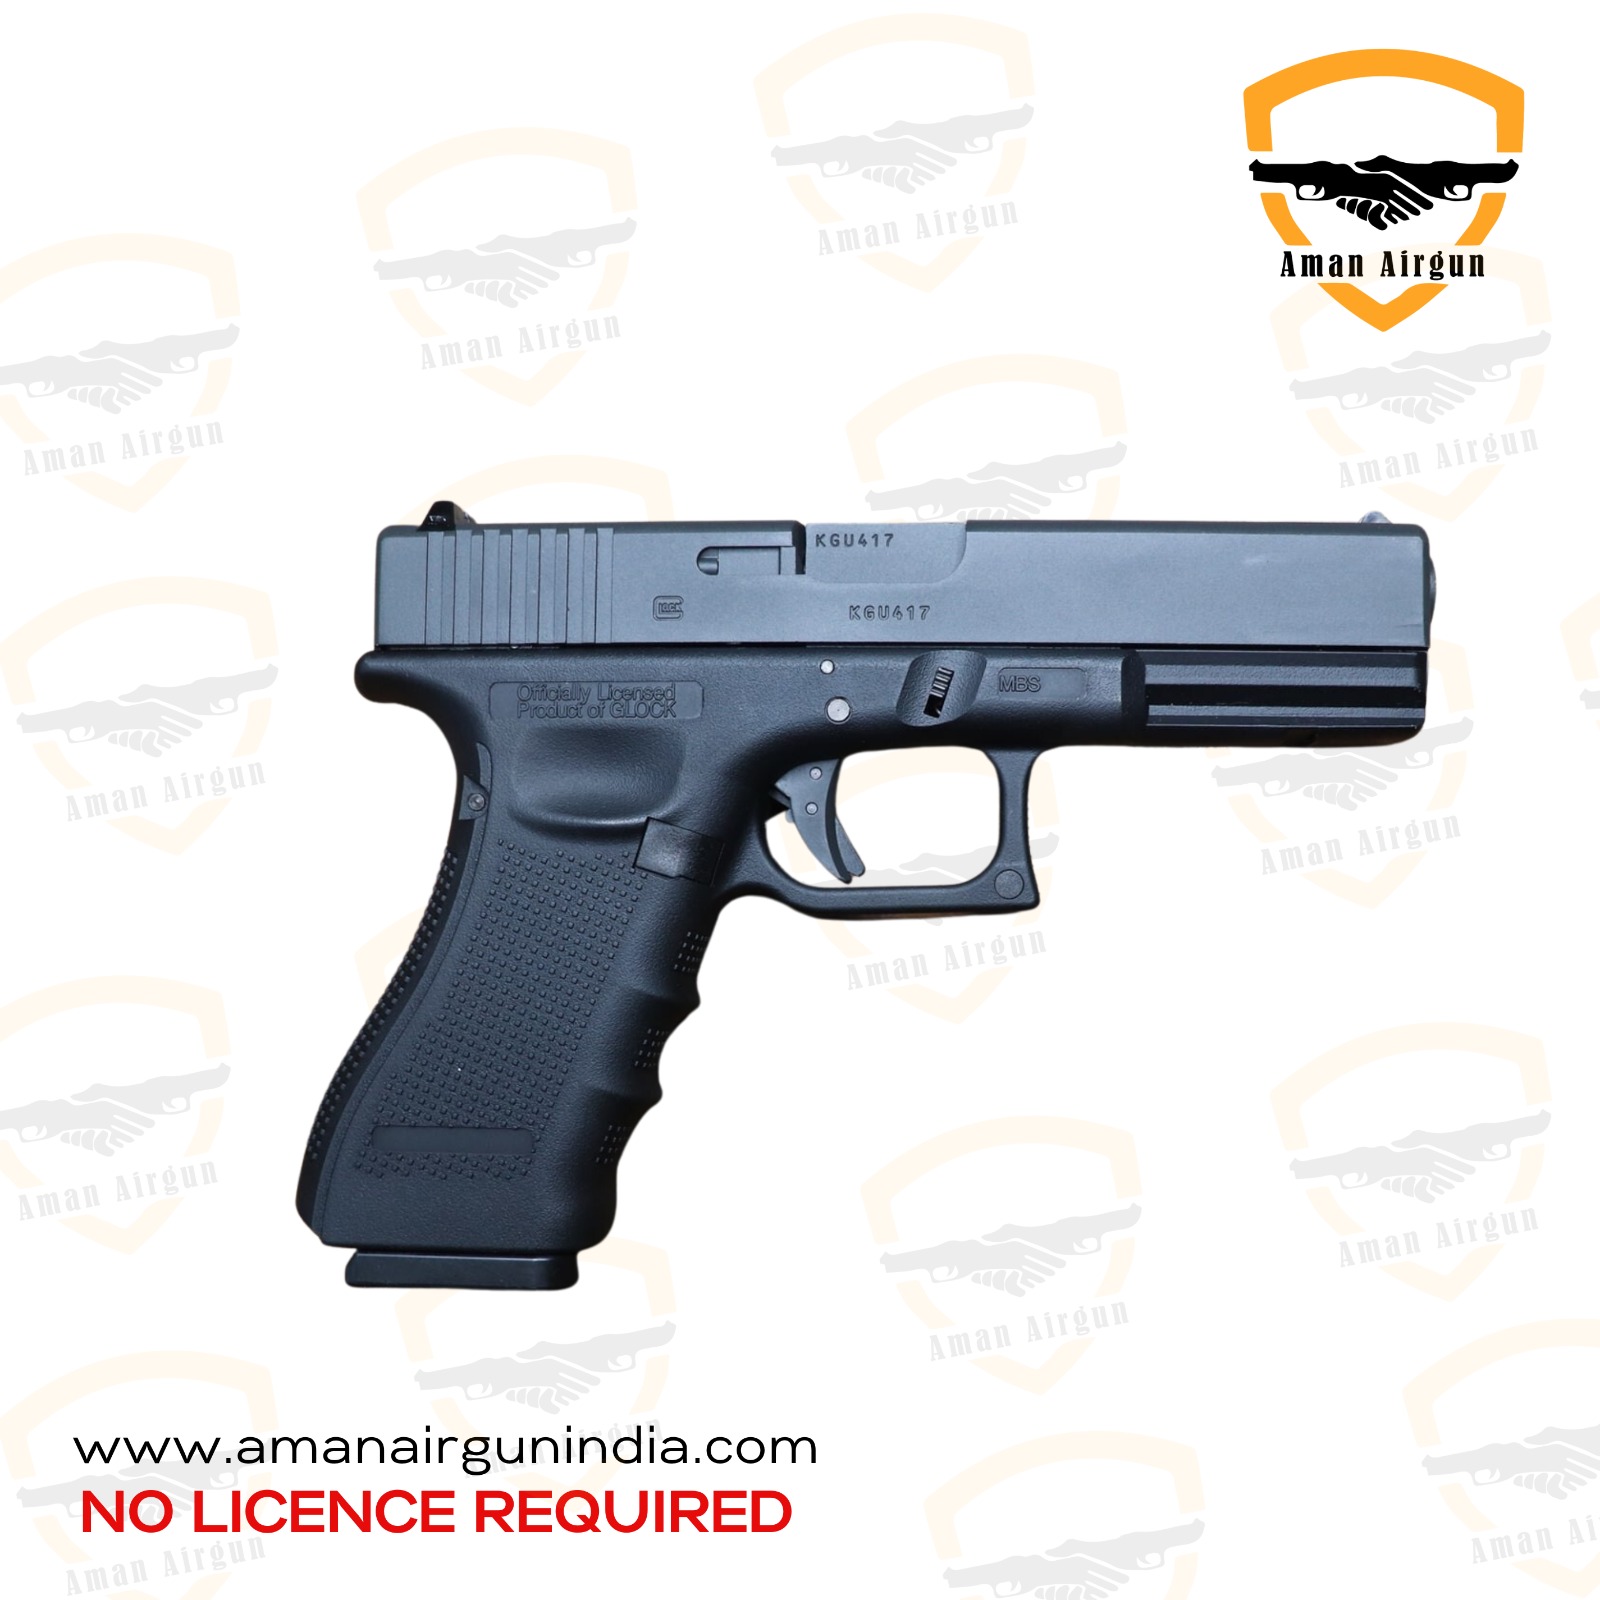 Glock 17 Gen 4 Aman Airgun India Aman Gun (3)